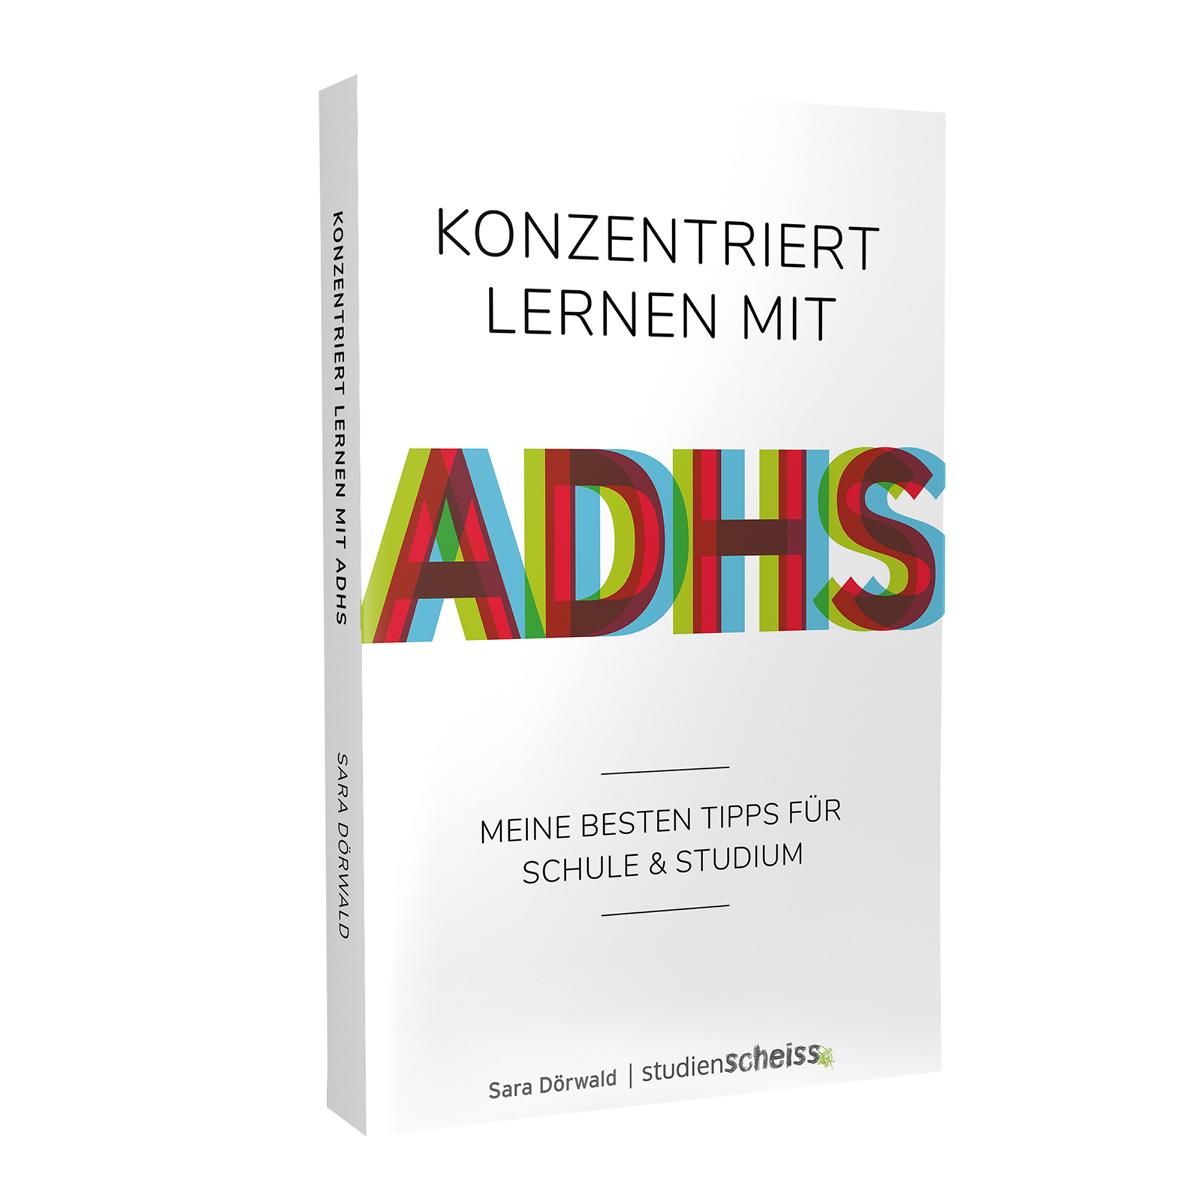 Konzentriert lernen mit ADHS (Meine besten Tipps für Schule und Studium) von Sara Dörwald erschienen im Studienscheiss Verlag